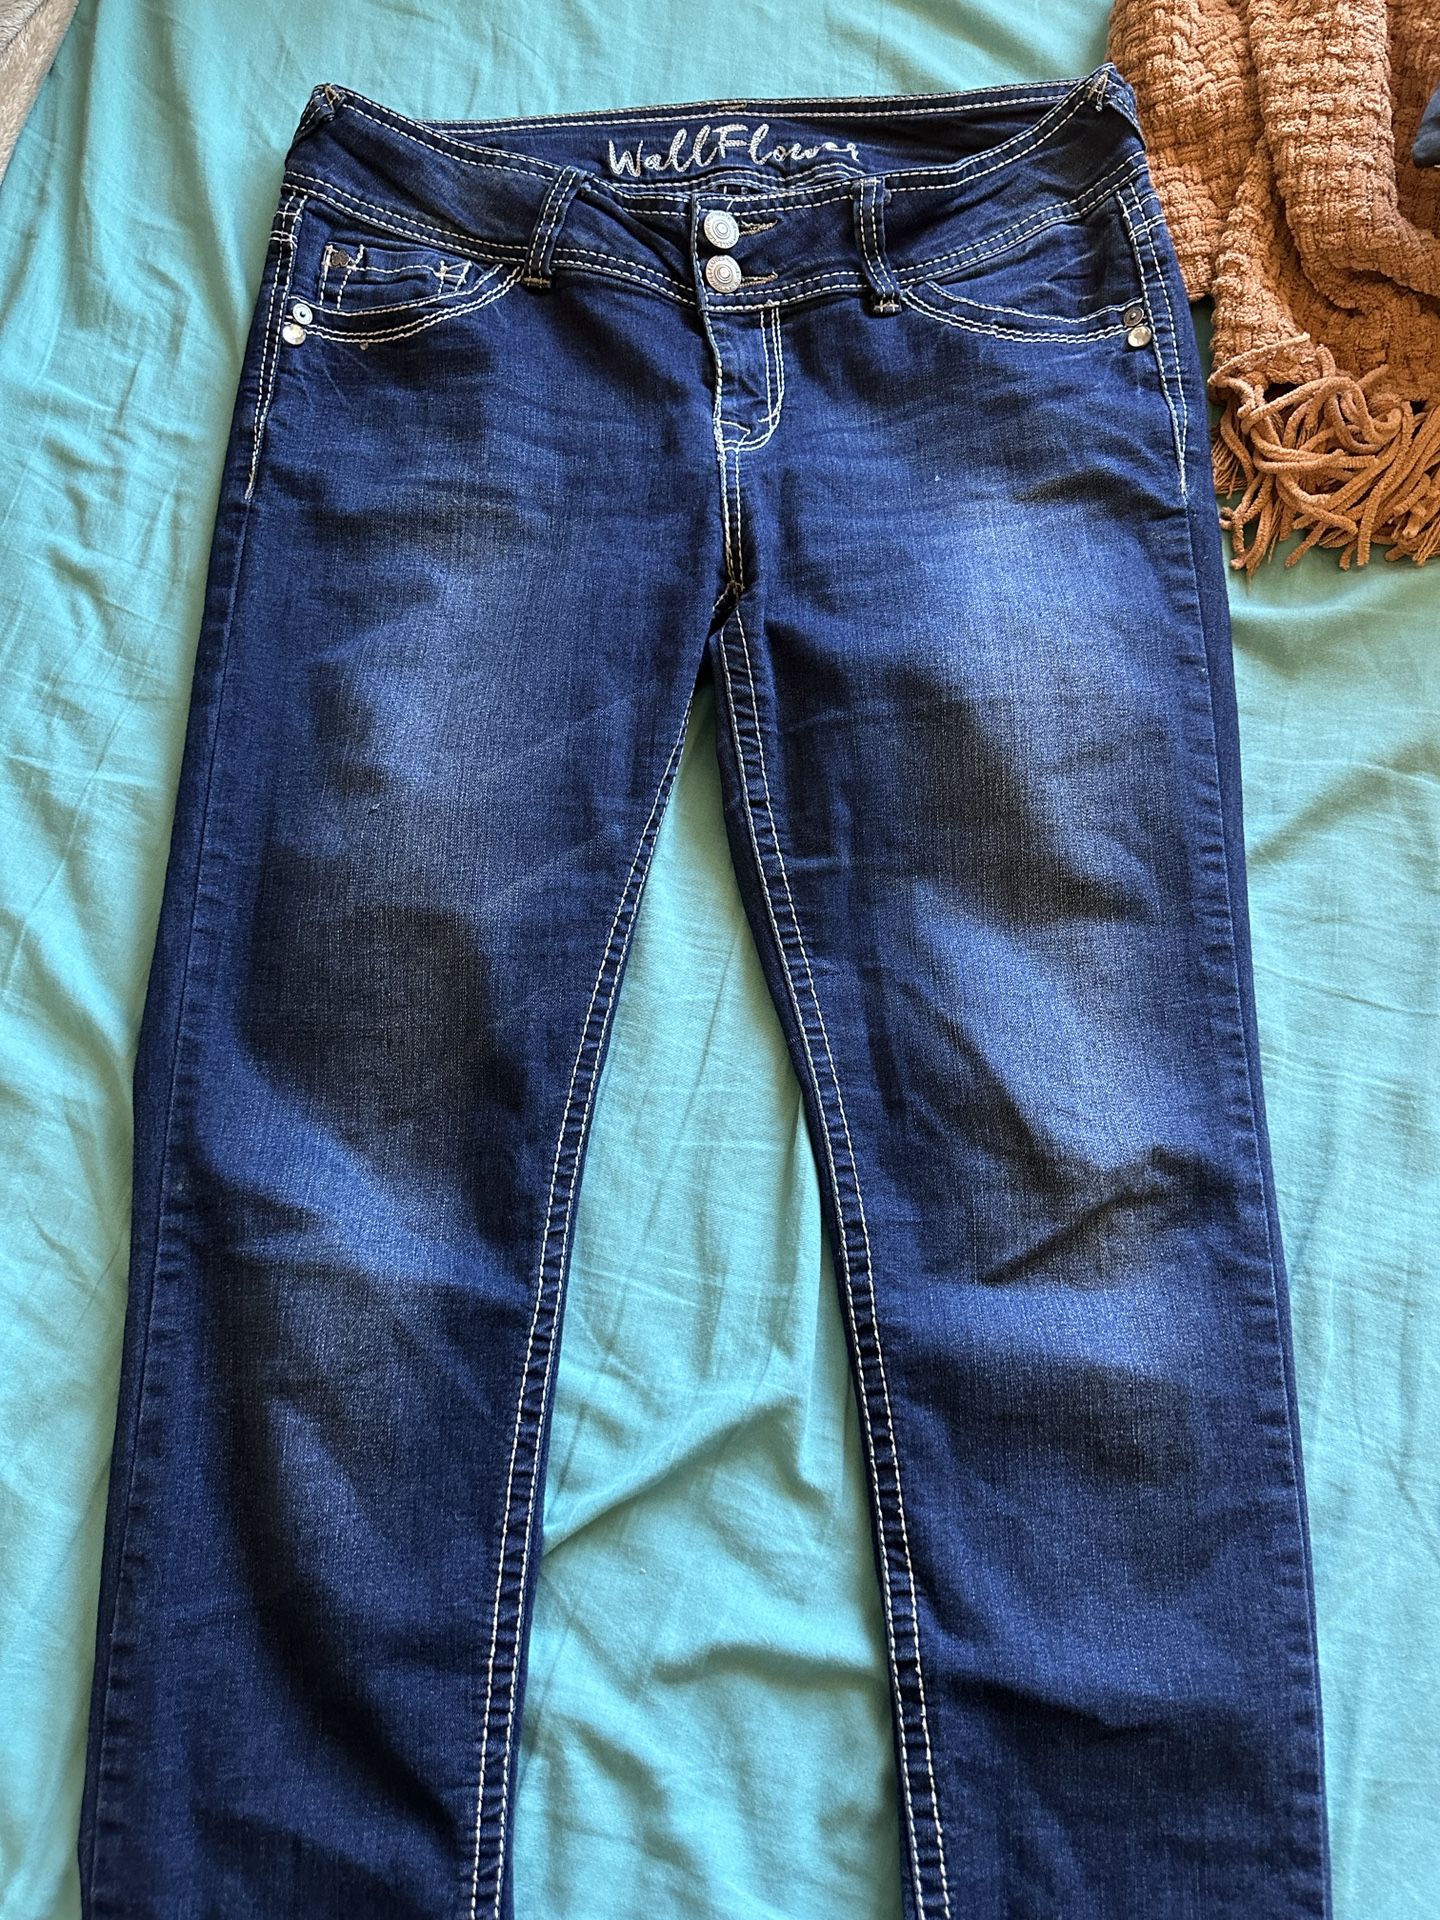 Women’s Jeans - Size 11